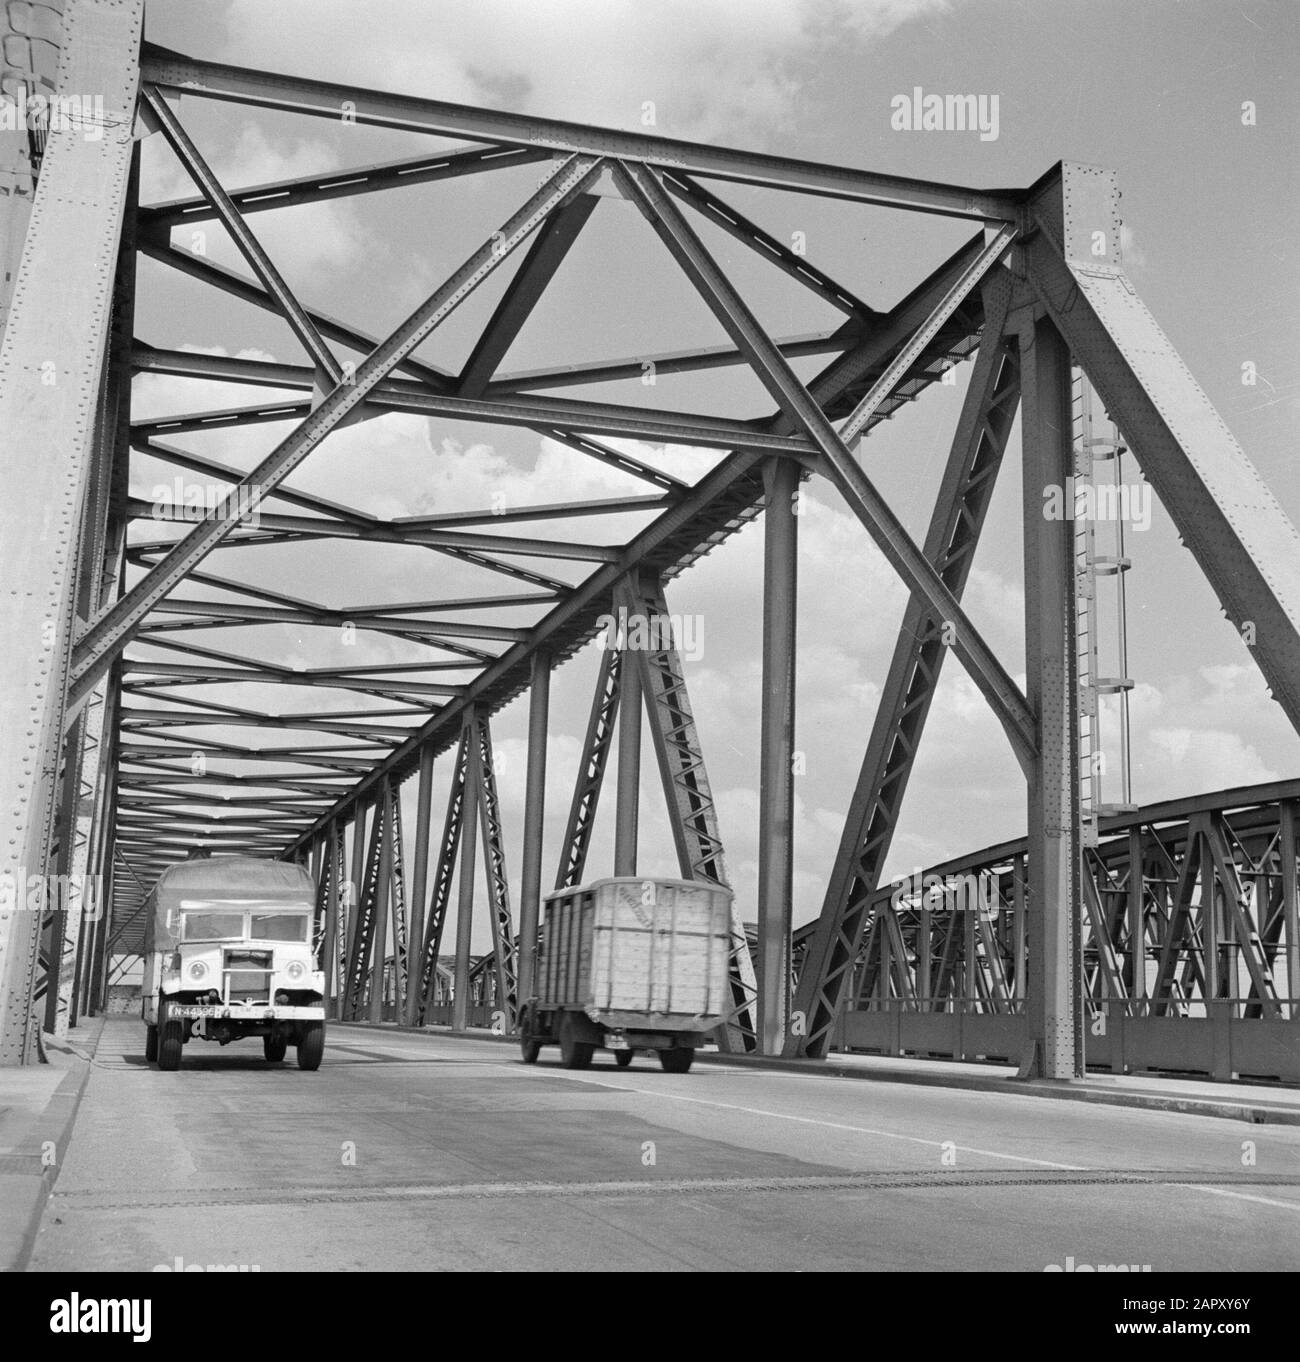 Carreteras y puentes en los países Bajos camiones en el Waalbrug cerca de Zaltbommel Fecha: 1 de junio de 1952 ubicación: Gelderland palabras clave: Puentes, carreteras, camiones Foto de stock